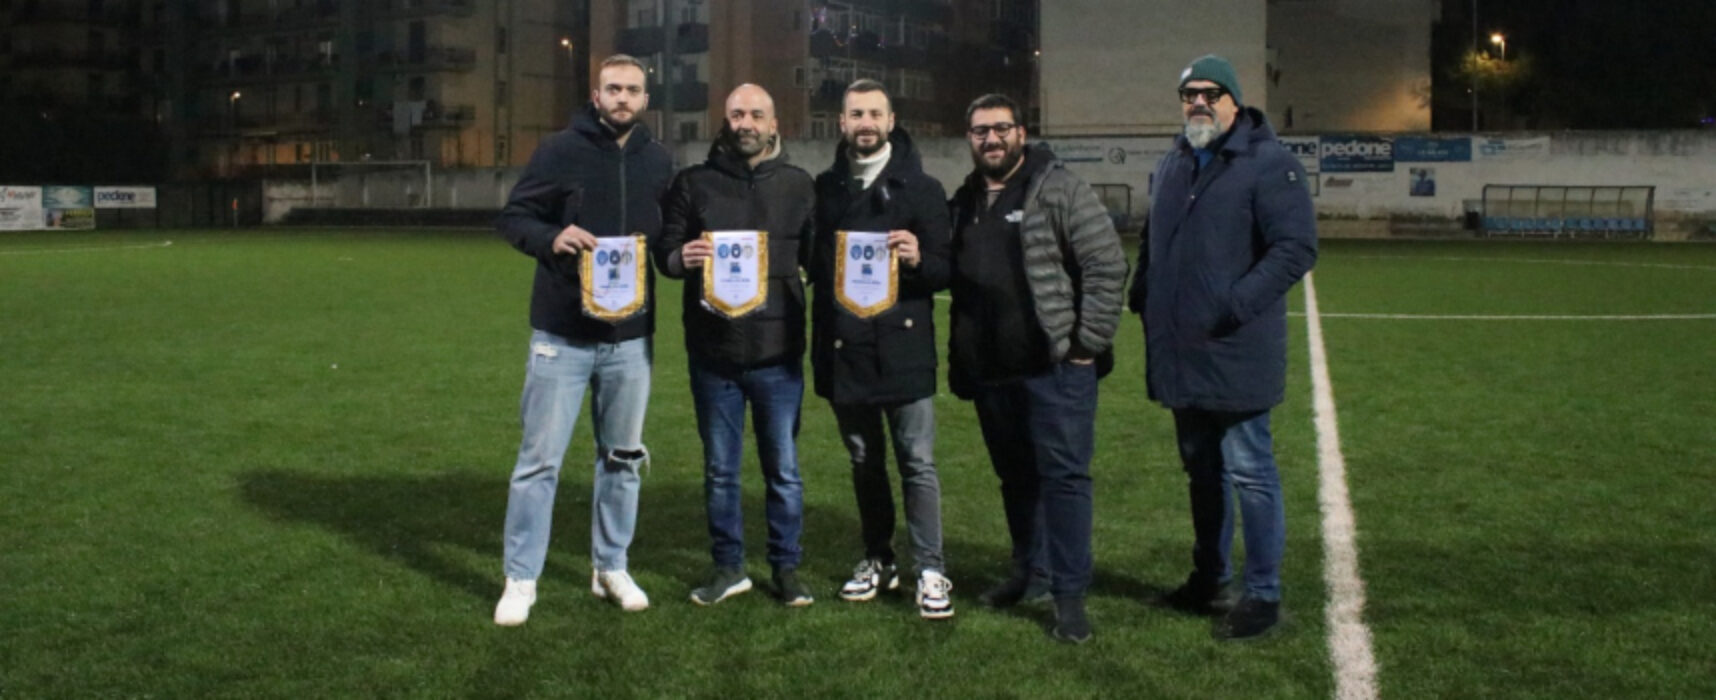 Il Bisceglie Calcio vince il memorial “Franco Di Reda”